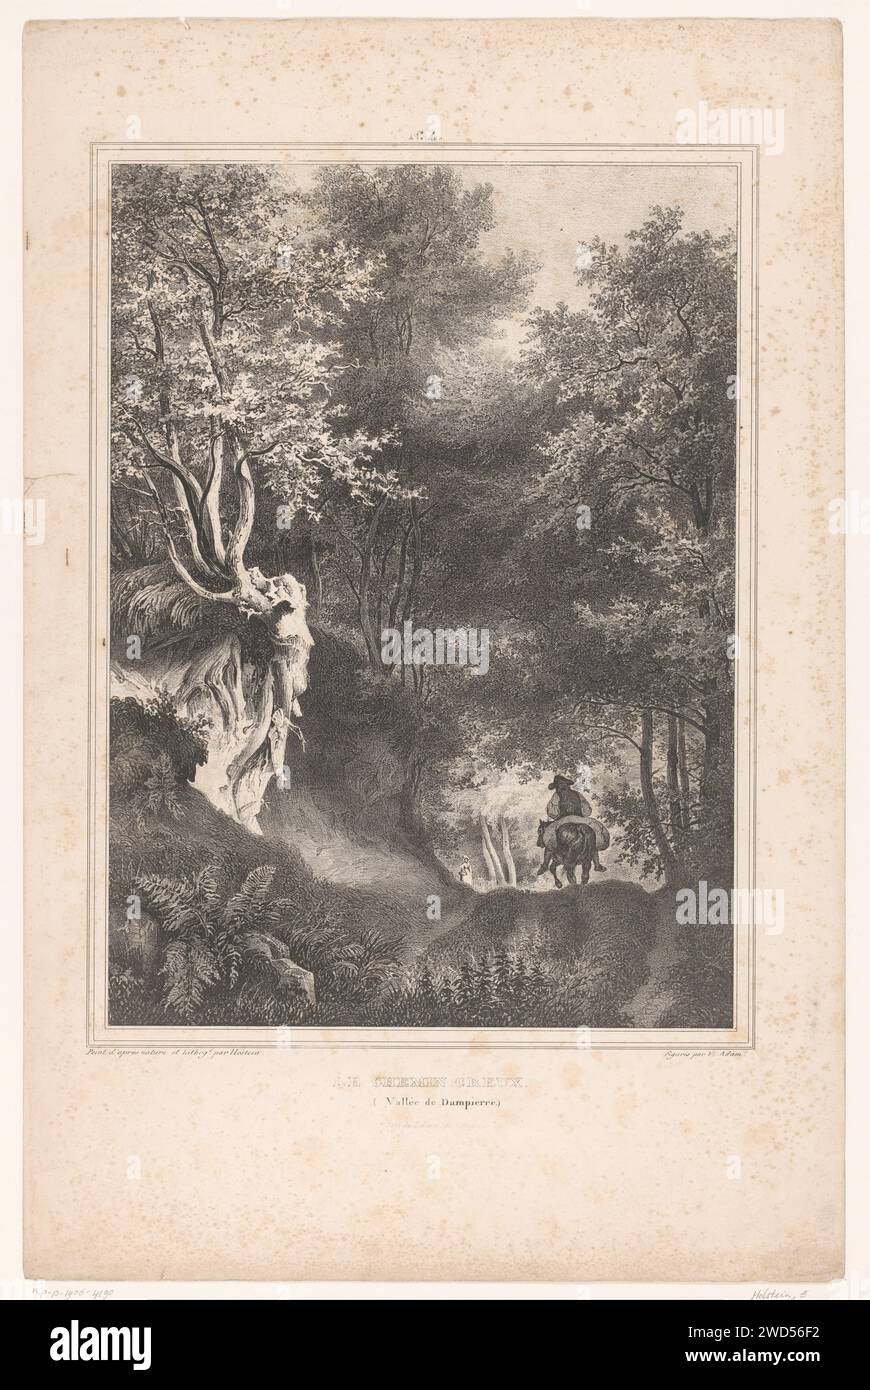 Viaggiatore su una strada forestale nella Valle di Dampierre, Edouard Hostein, c. 1832 stampa Paris paper "in viaggio", viaggiatore in corso. Sentiero forestale o corsia Yvelines Foto Stock